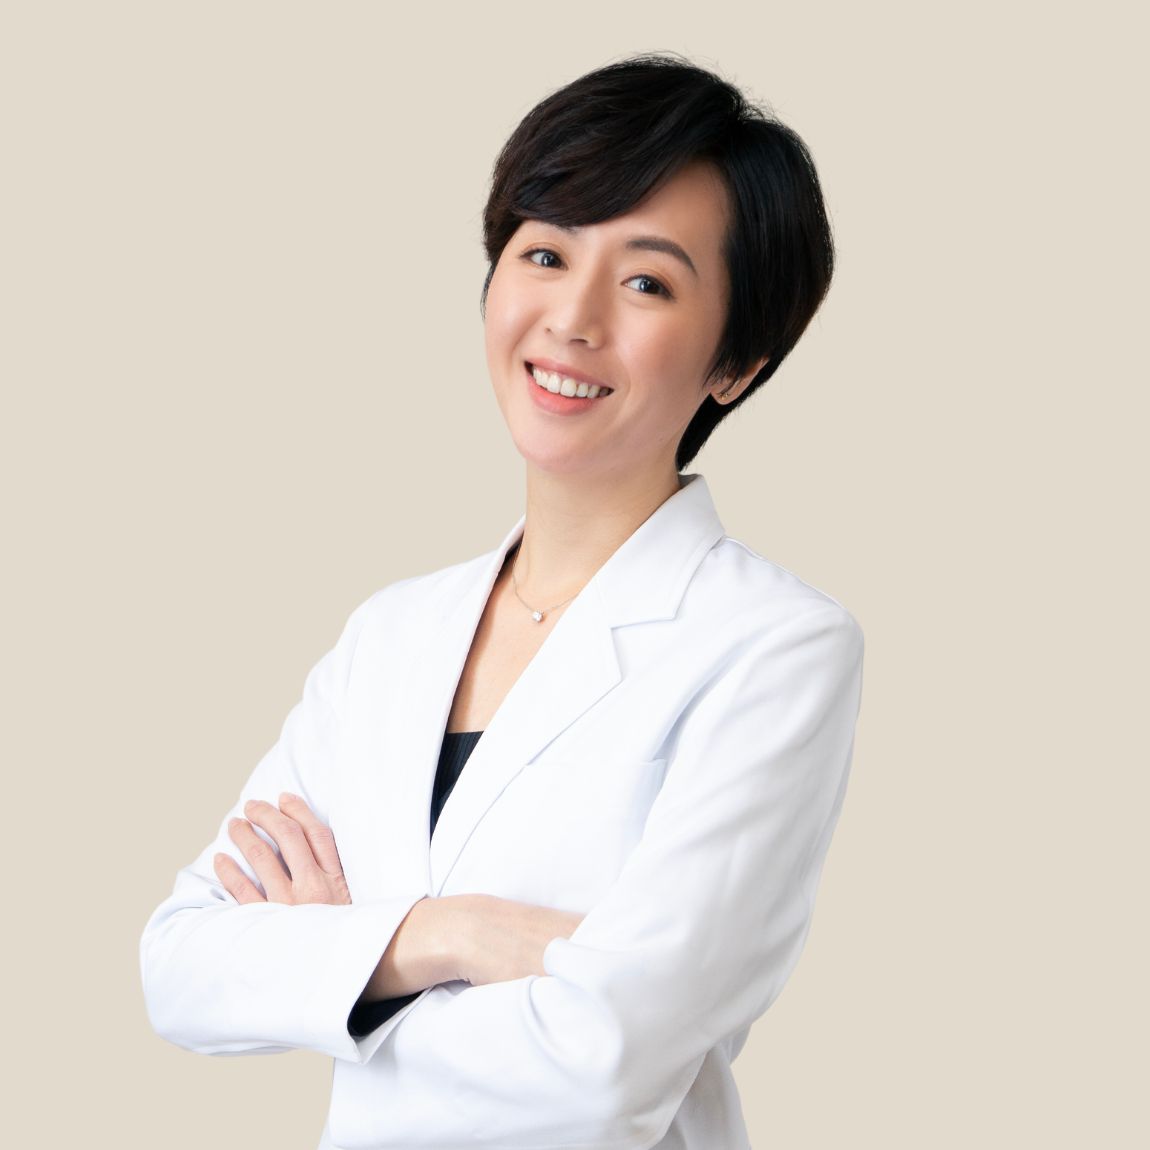 黃馨慧 Dr. ファン Hsin-Hui Huang, MD